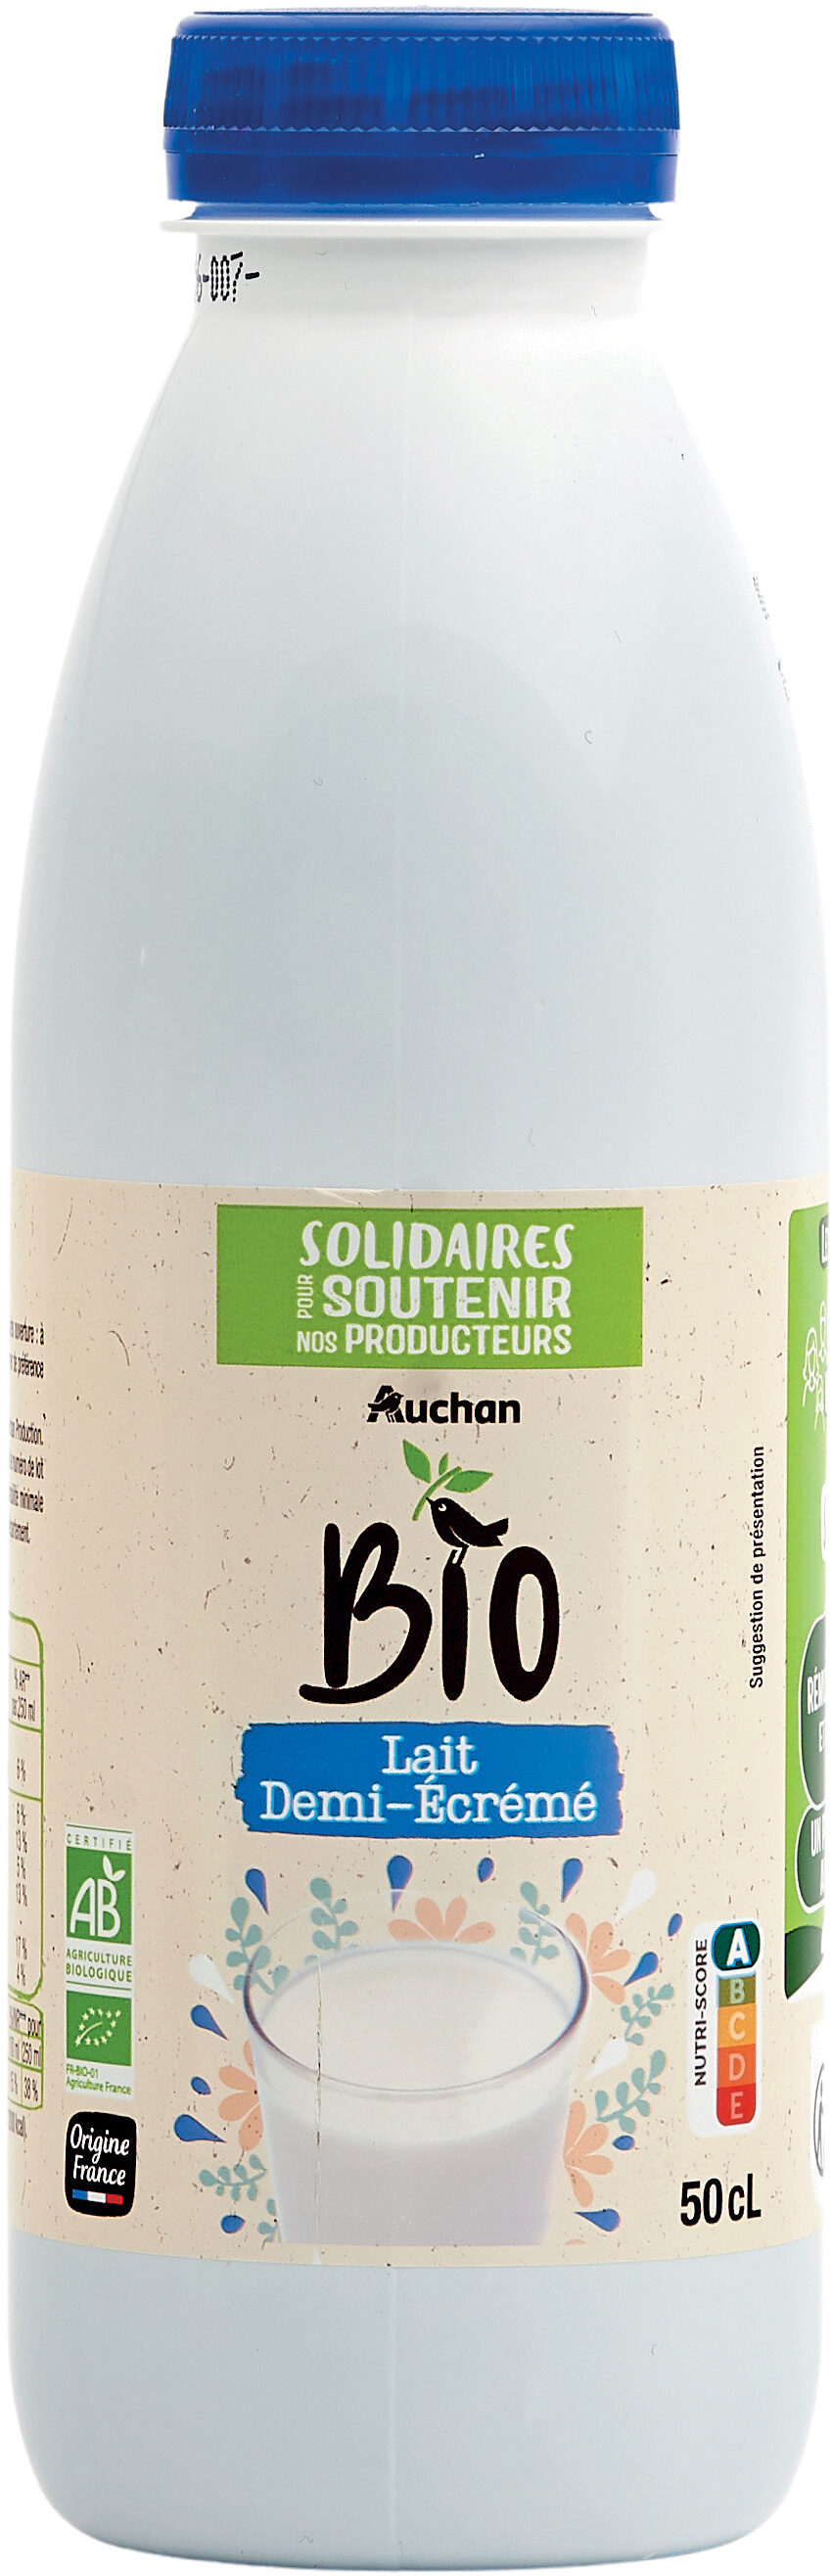 Auchan BioLAIT DEMI ECREMEORIGINE FRANCE SOLIDAIRES POUR SOUTENIR NOS PRODUCTEURSFilière responsable50 cL - Prodotto - fr